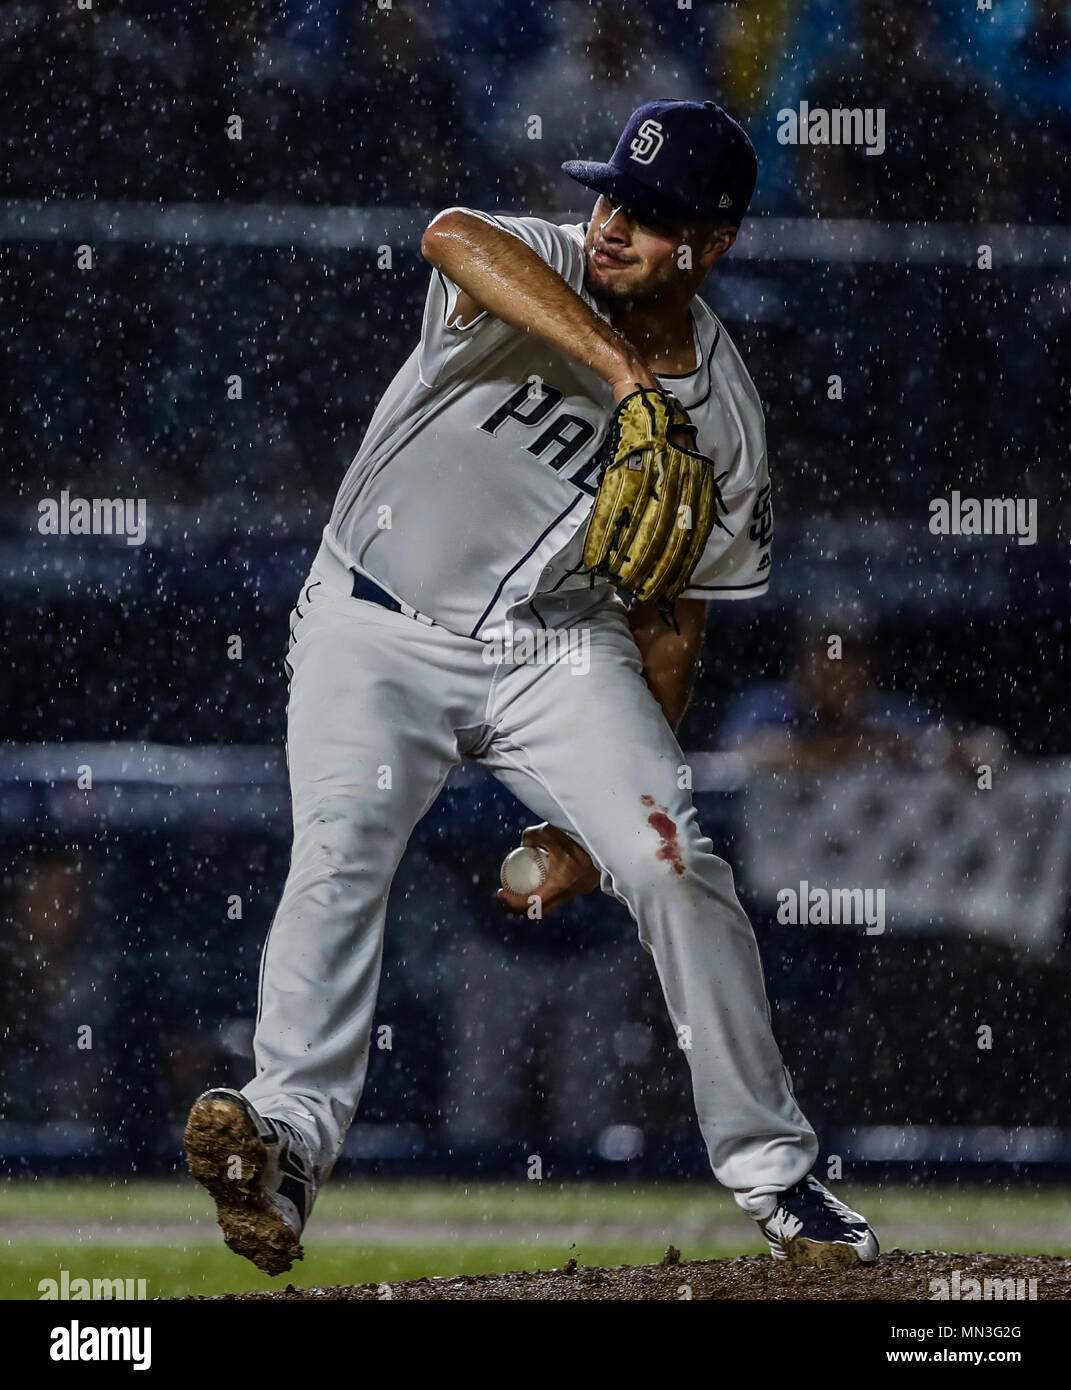 Joey Lucchesi pitcher inicial de San Diego lanza la pelota bajo la intensa lluvia, durante el partido de beisbol de los Dodgers de Los Angeles contra Padres de San Diego, durante el primer juego de la serie las Ligas Mayores del Beisbol en Monterrey, Mexico el 4 de Mayo 2018. (Photo: Luis Gutierrez) Stock Photo